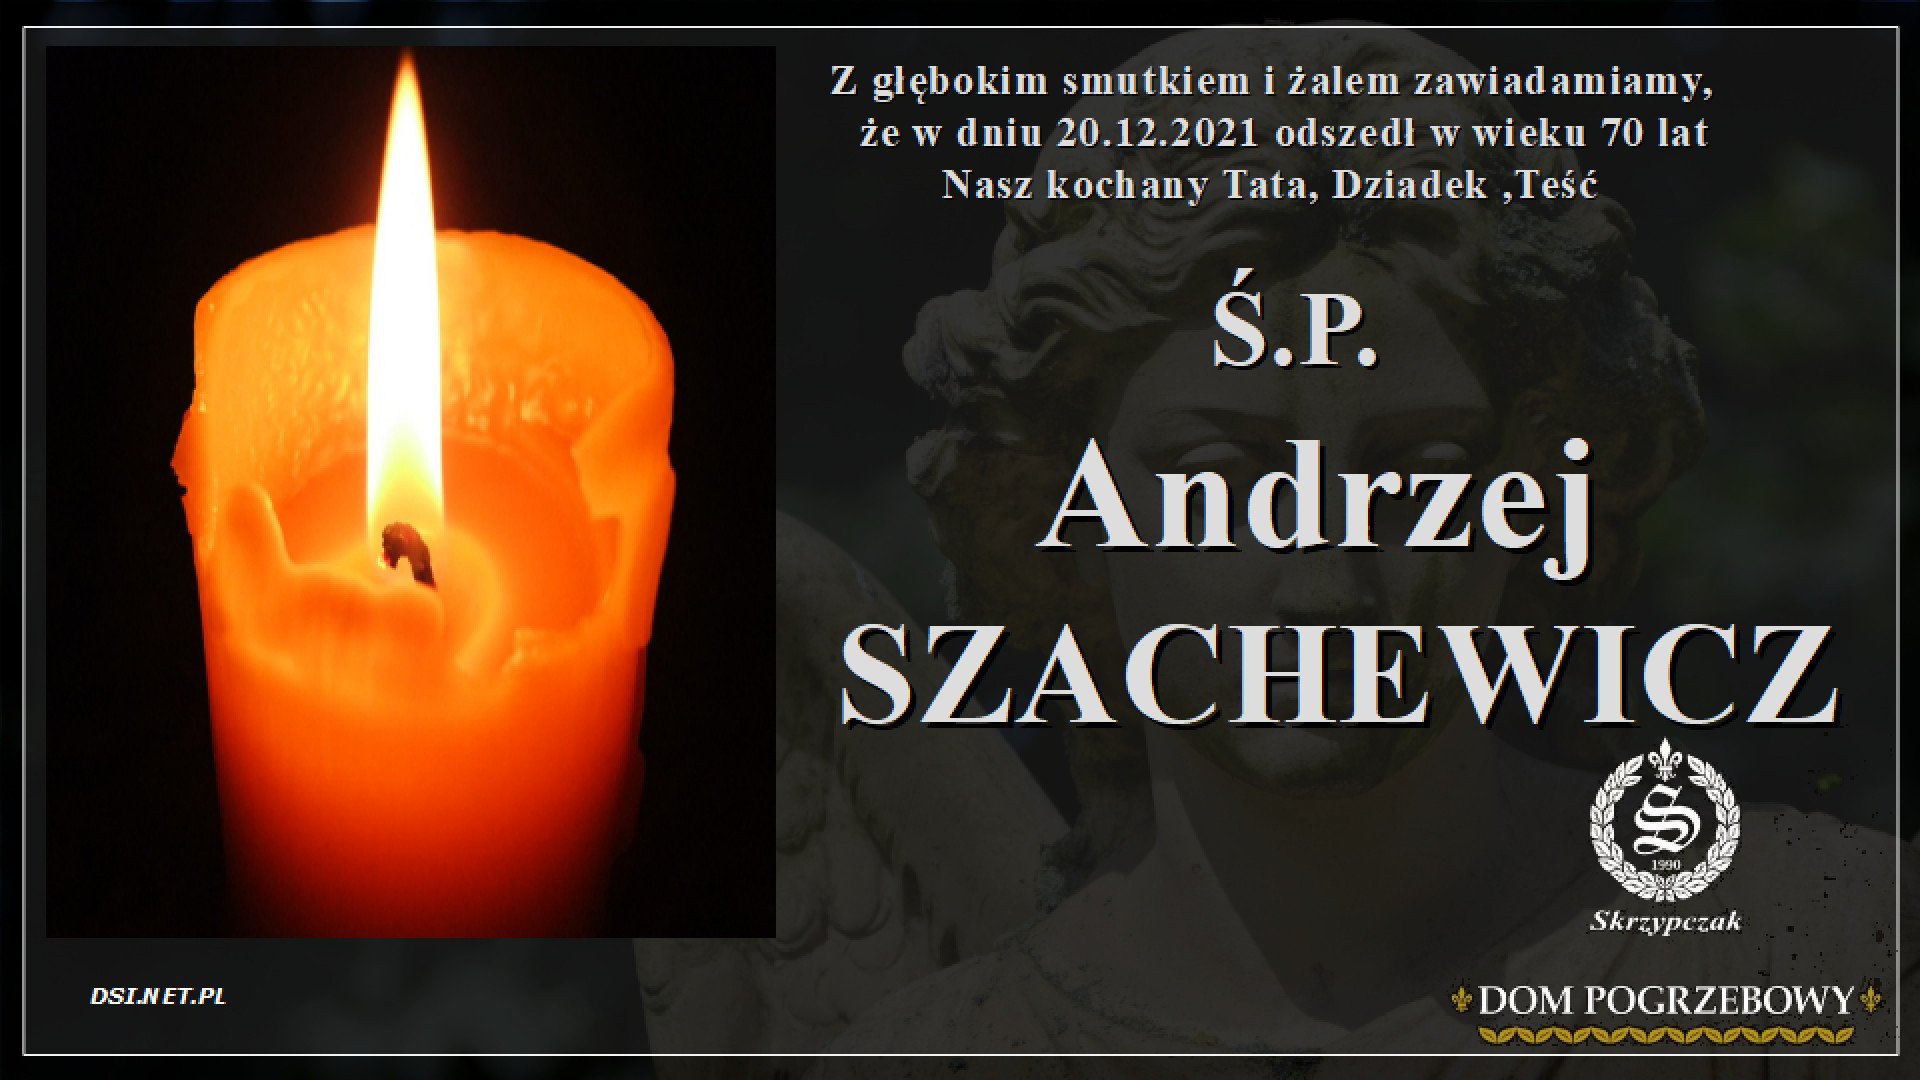 Ś.P. Andrzej Szachewicz